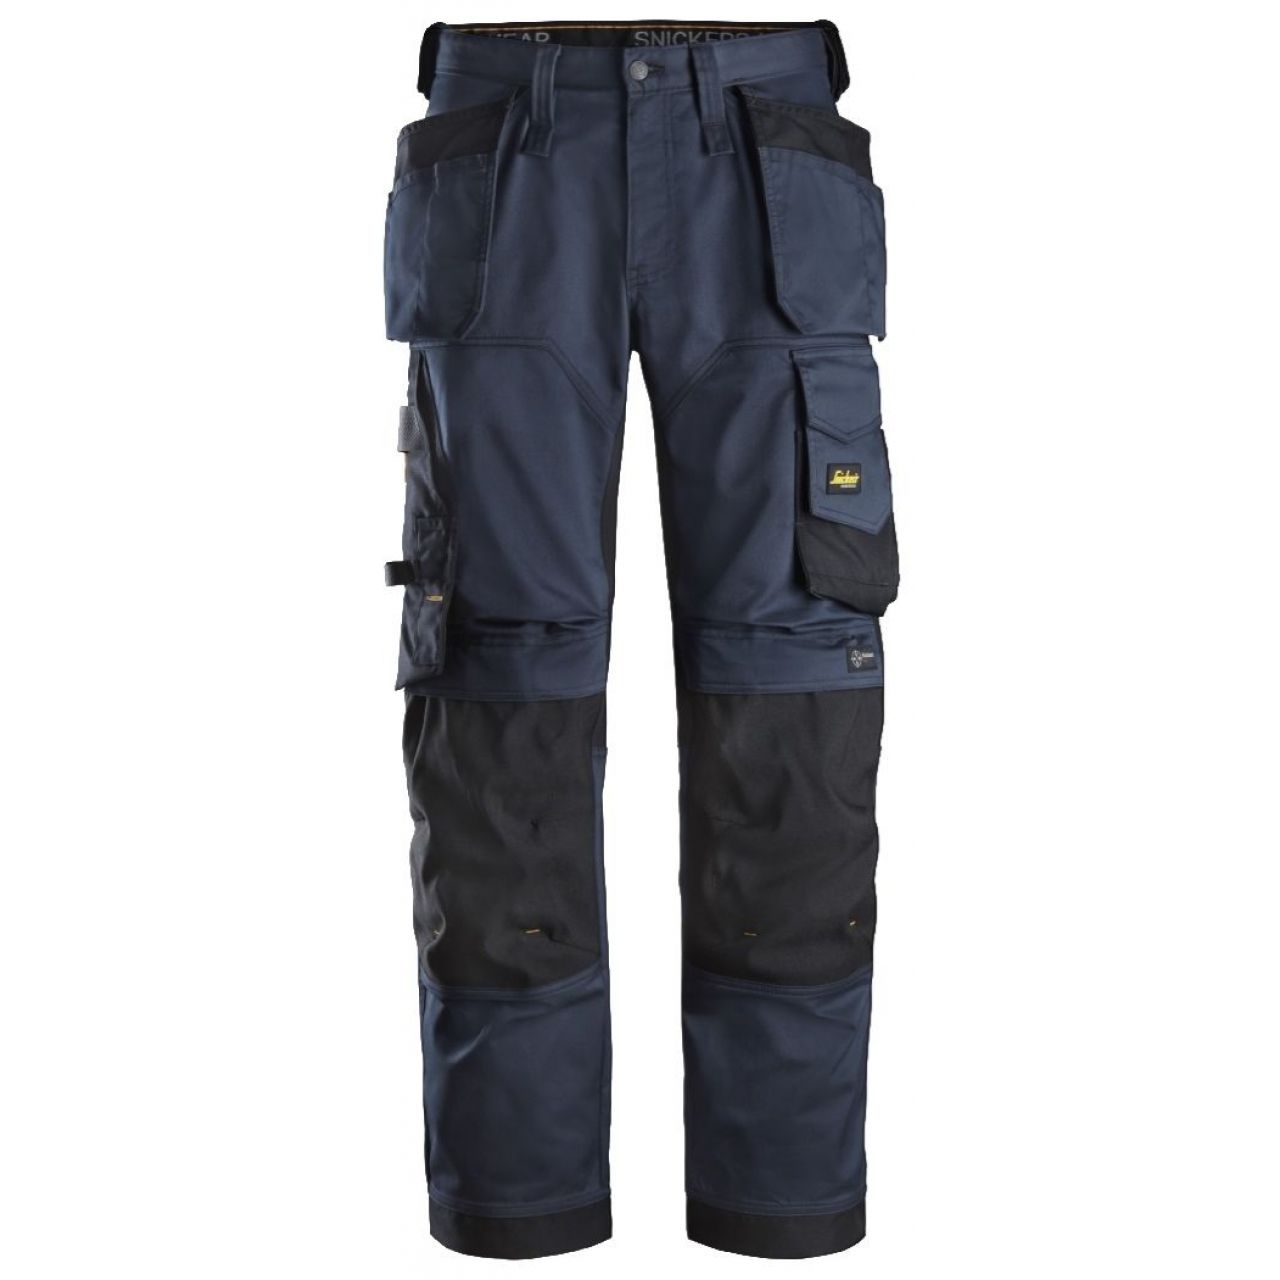 Pantalon elastico ajuste holgado AllroundWork bolsillos flotantes azul marino-negro talla 160